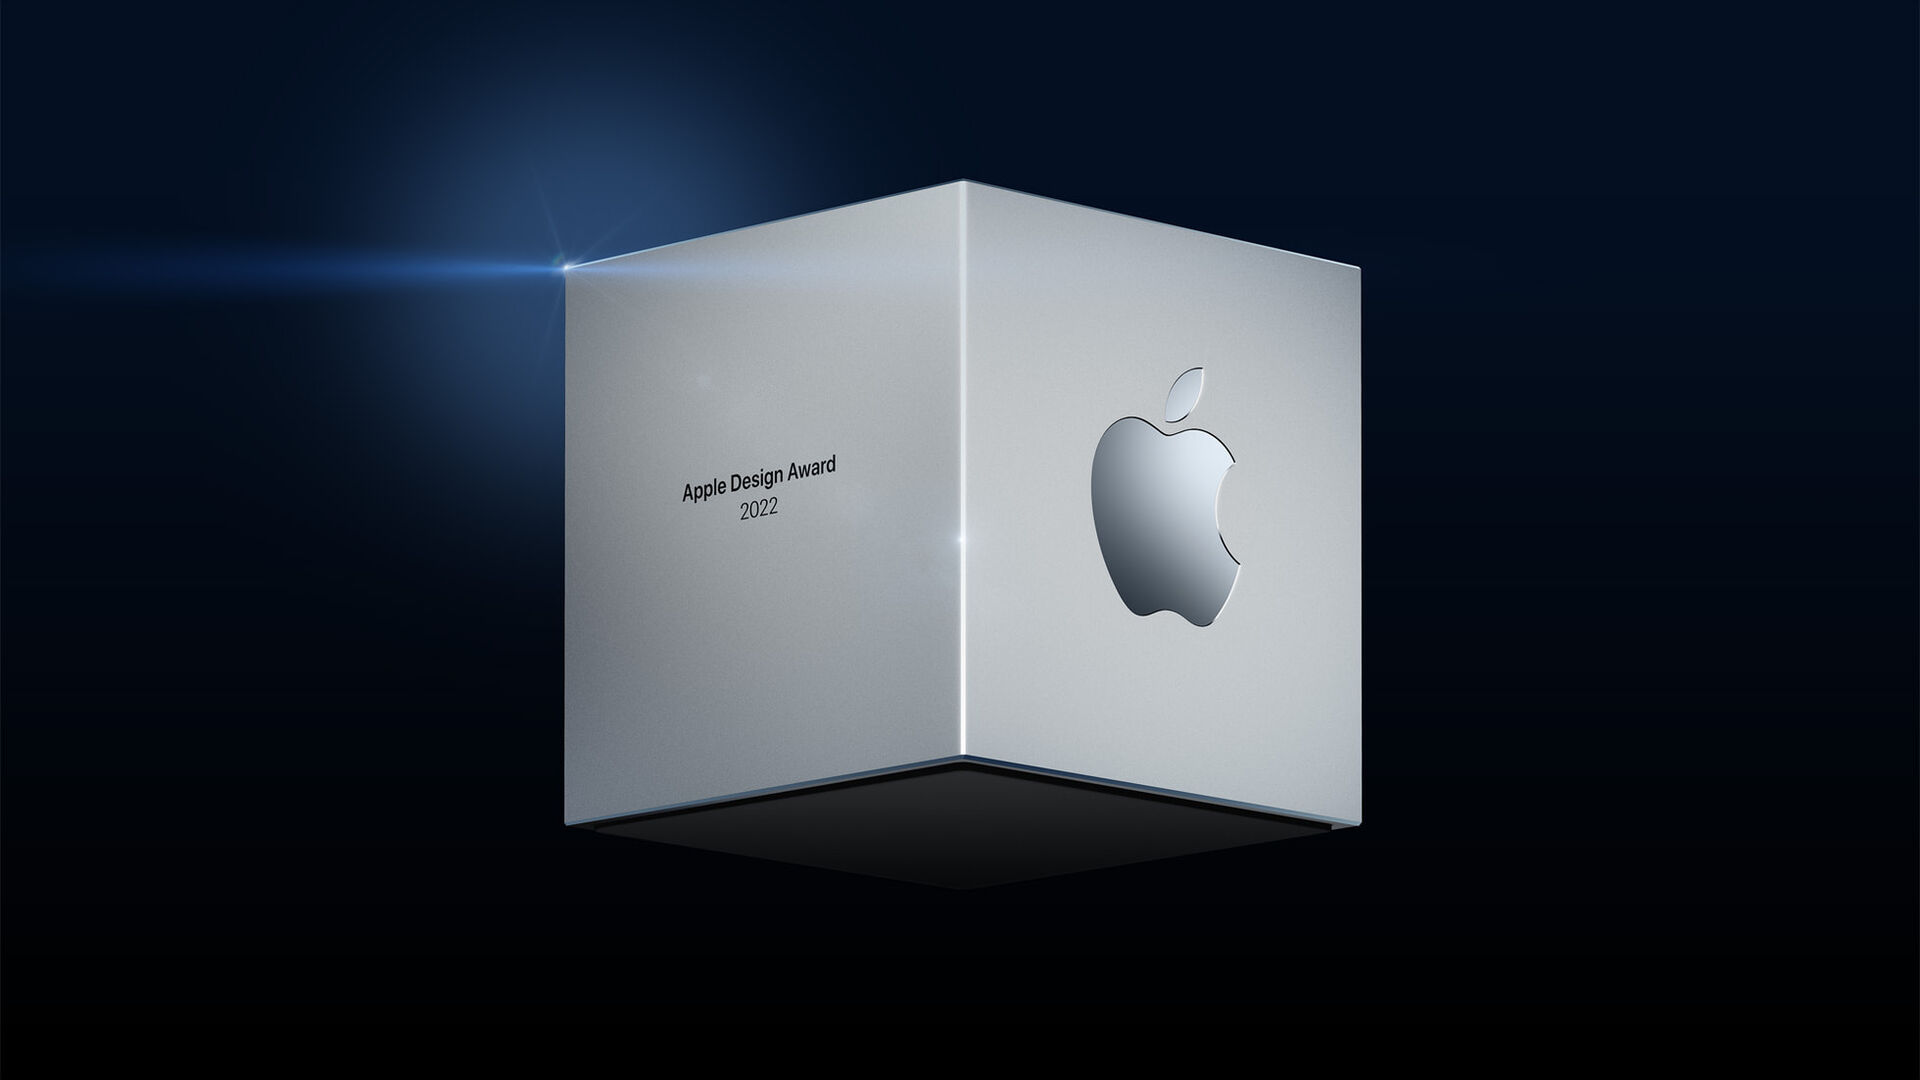 Volst en Max Frimout winnen met Odio prestigieuze Apple Design Award